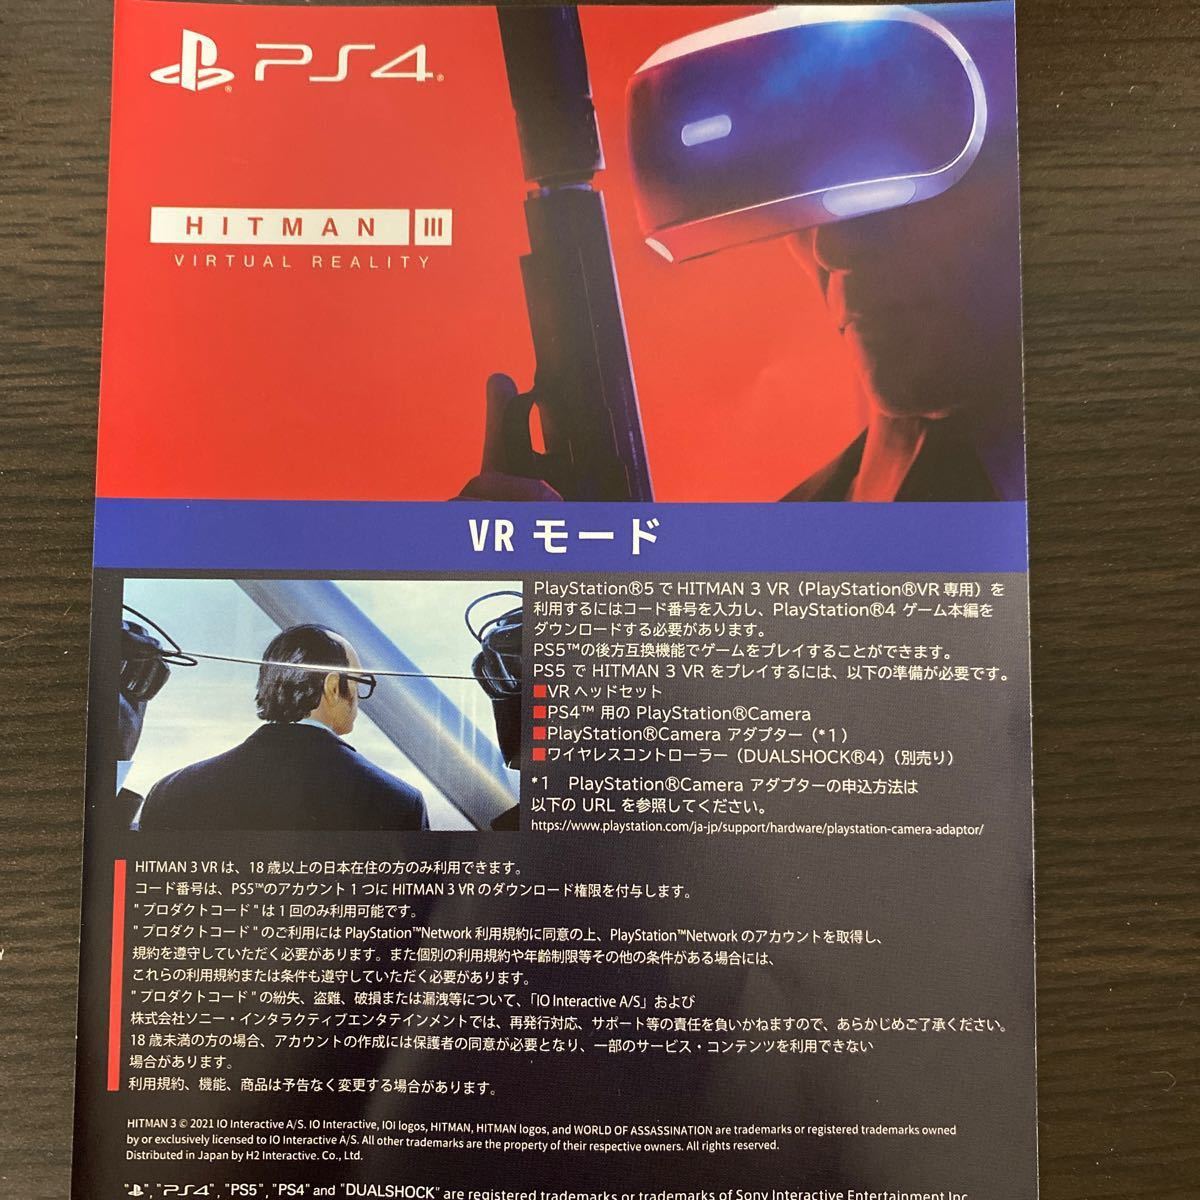 PS4 PS5 ヒットマン Hitman III 3 VR モード プロダクトコード